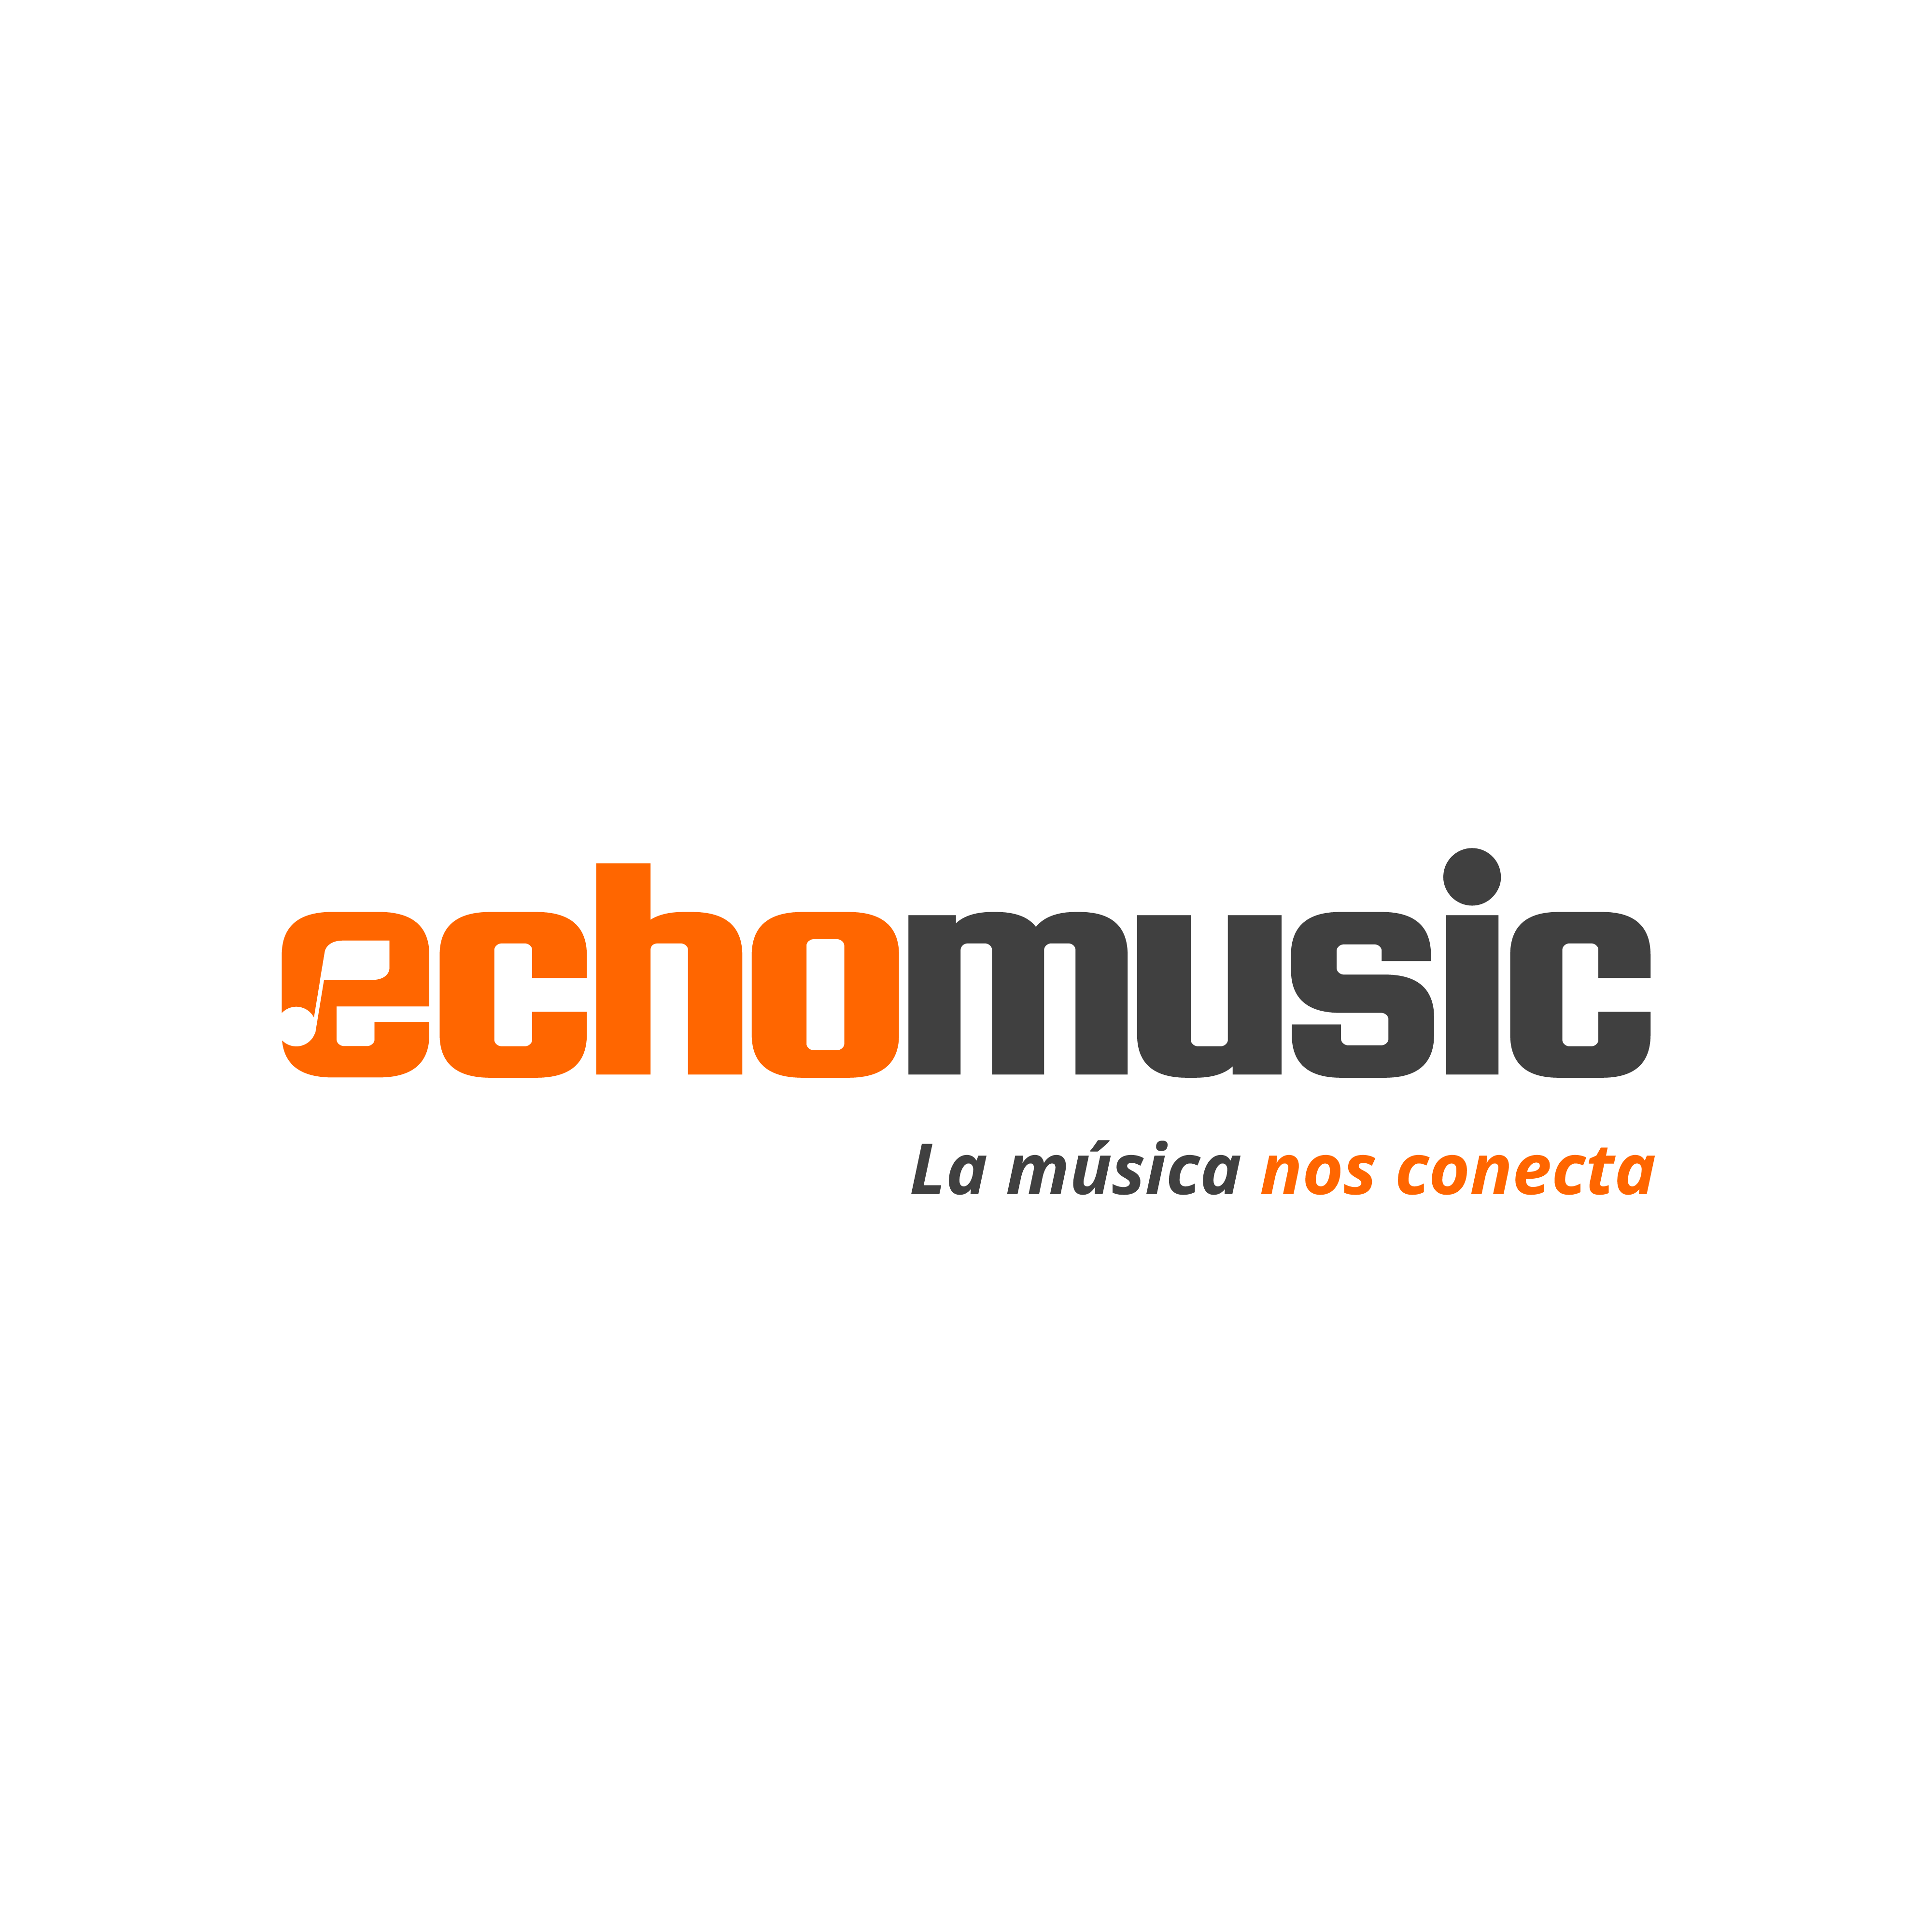 Echomusic: La Música nos Conecta